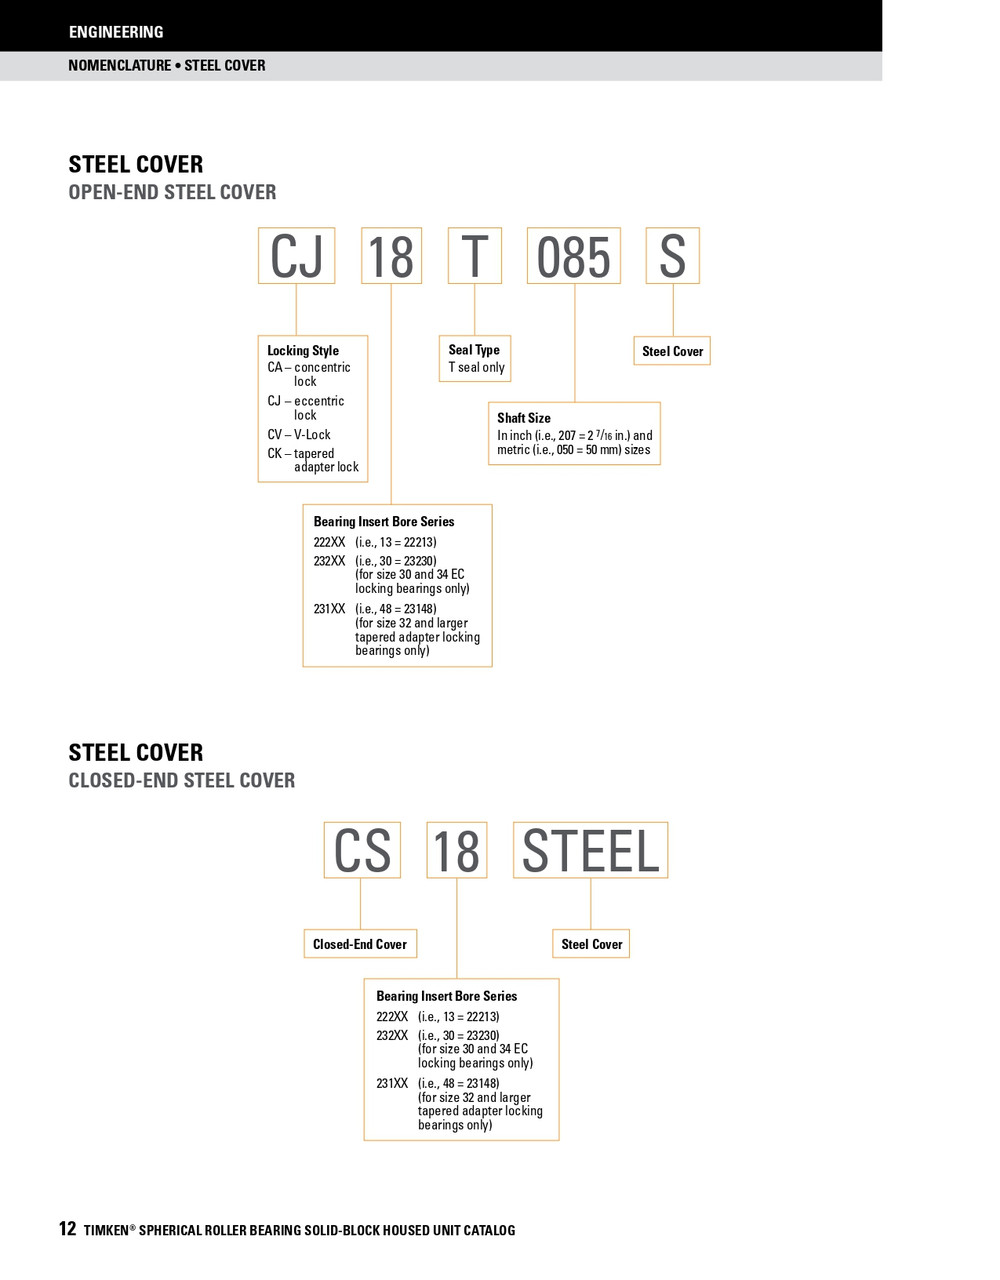 13-15/16" Timken SRB Steel Open End Cover w/Teflon Seal - TA/DV Taper Lock Bushing Type  CK76T1315S